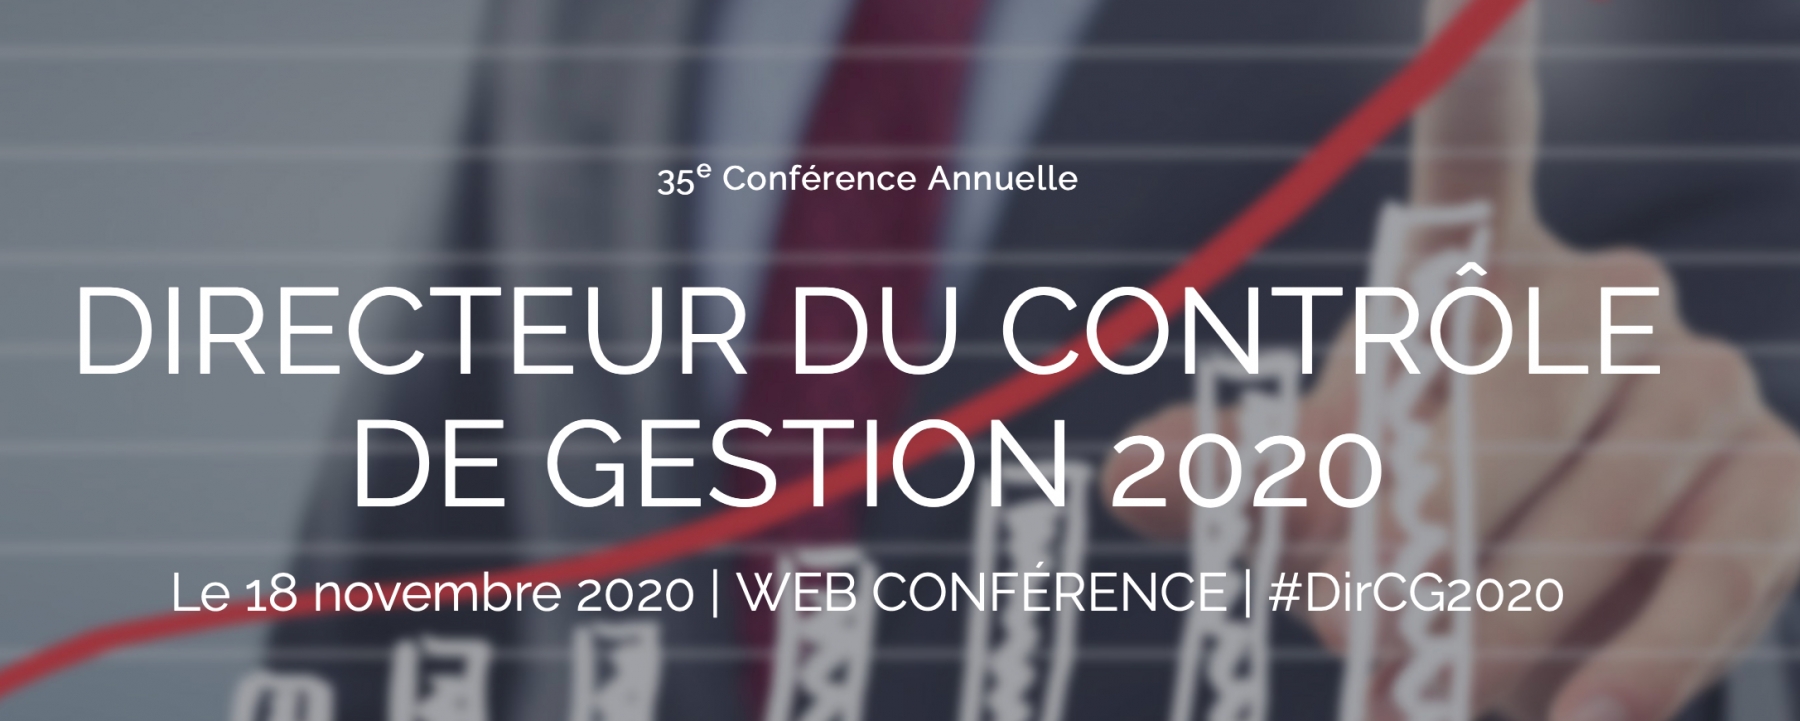 Conférence Directeur du Contrôle de Gestion 2020, organisée par Drive Innovation Insights 2020 